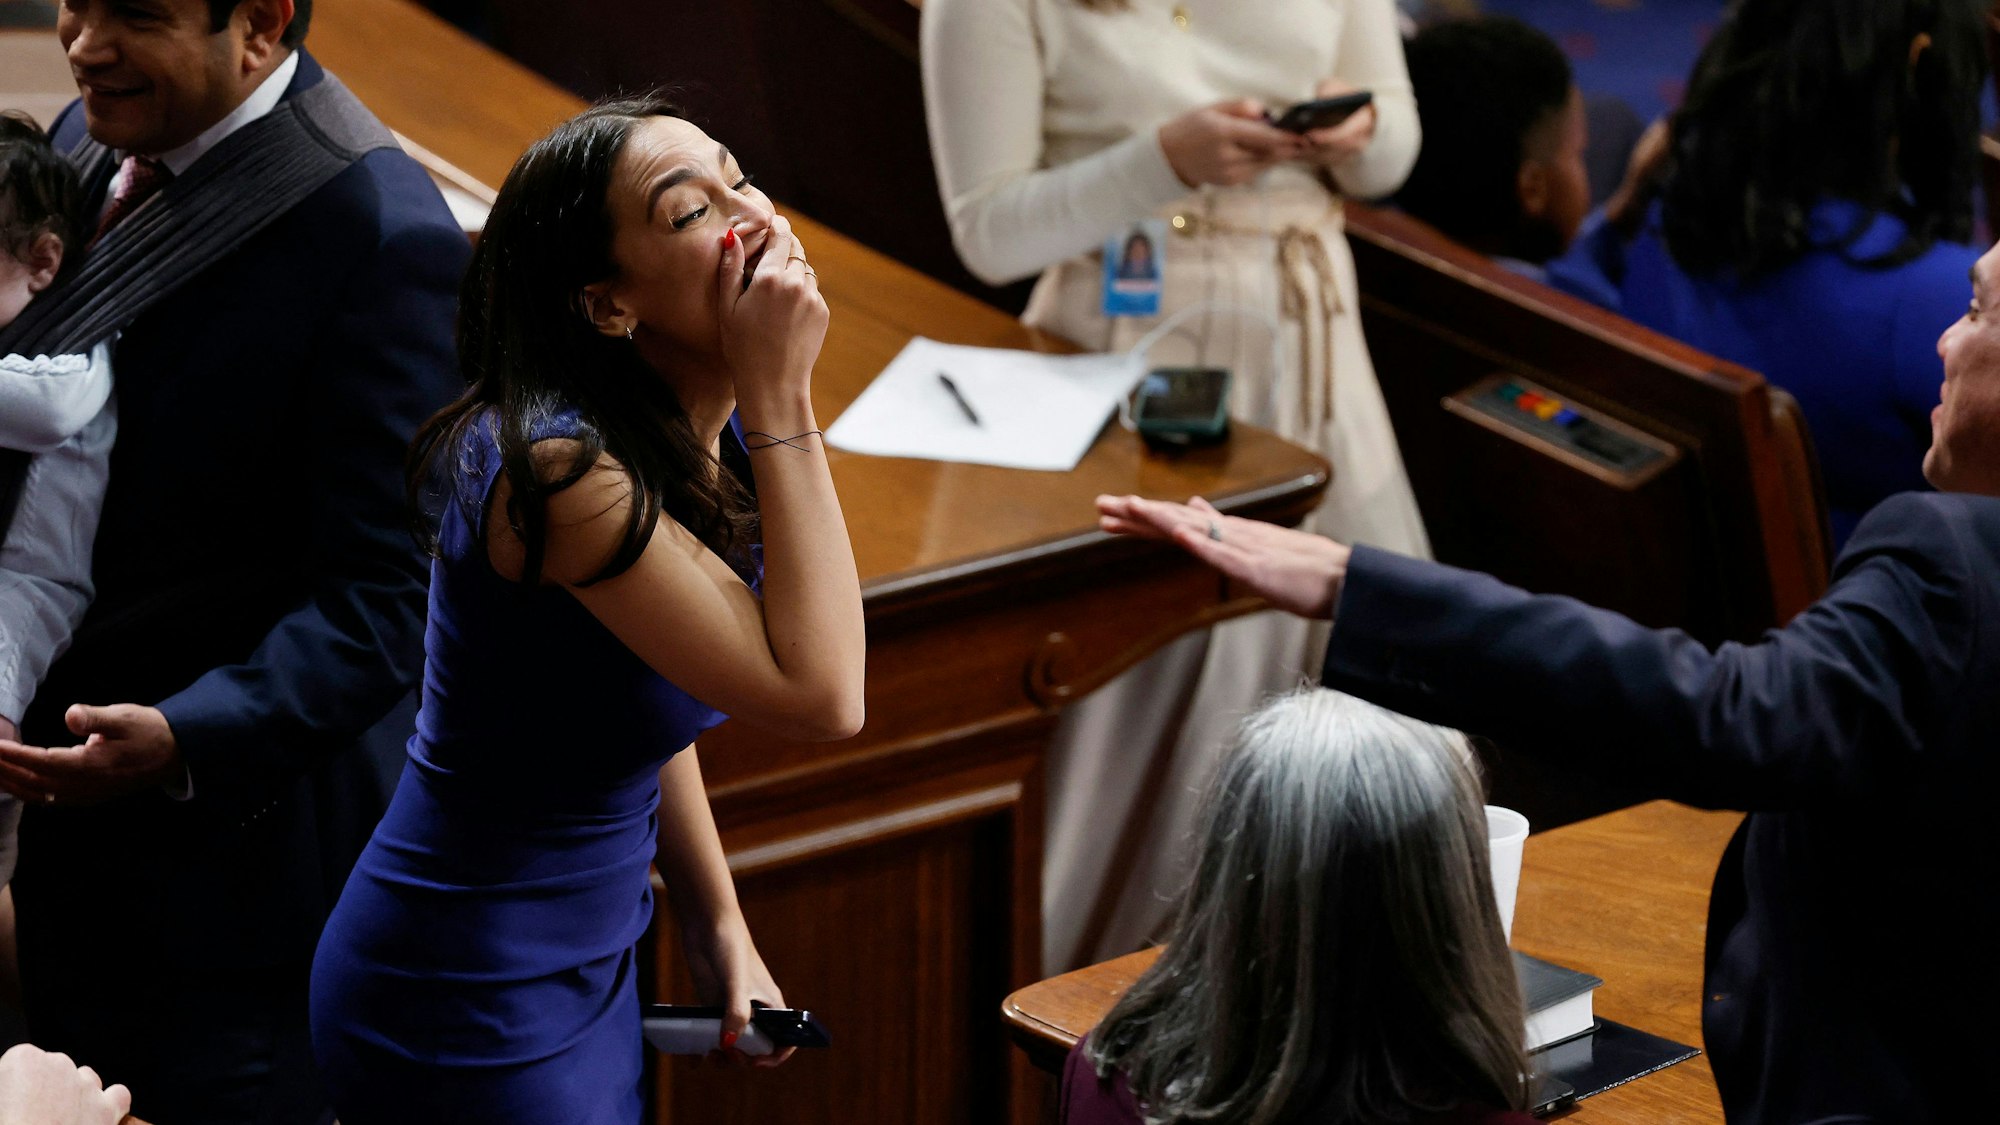 Die demokratische Abgeordnete Alexandria Ocasio-Cortez lacht im Repräsentantenhaus, nachdem es dem neuen Kongress nicht gelungen ist, einen Sprecher zu wählen. Die hält sich die Hand vor den Mund.